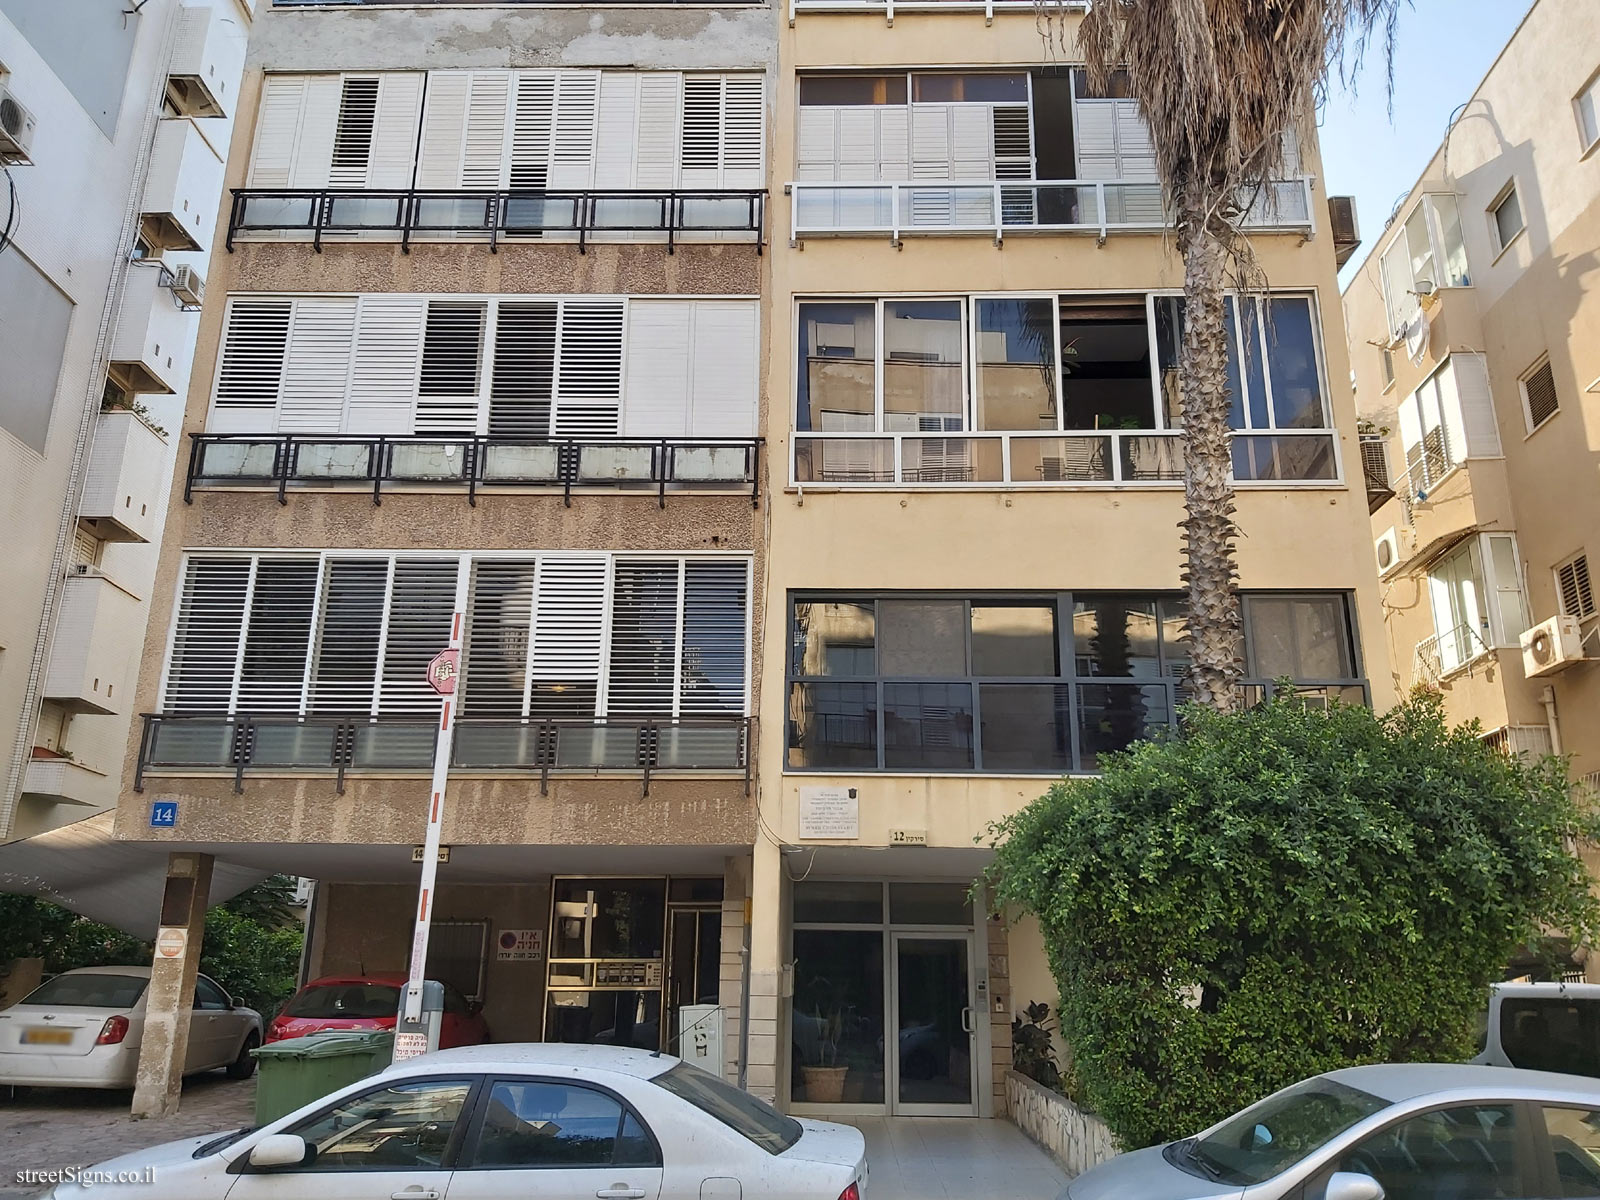 The house of Avner Chiskiyahu - Sirkin St 12, Tel Aviv-Yafo, Israel